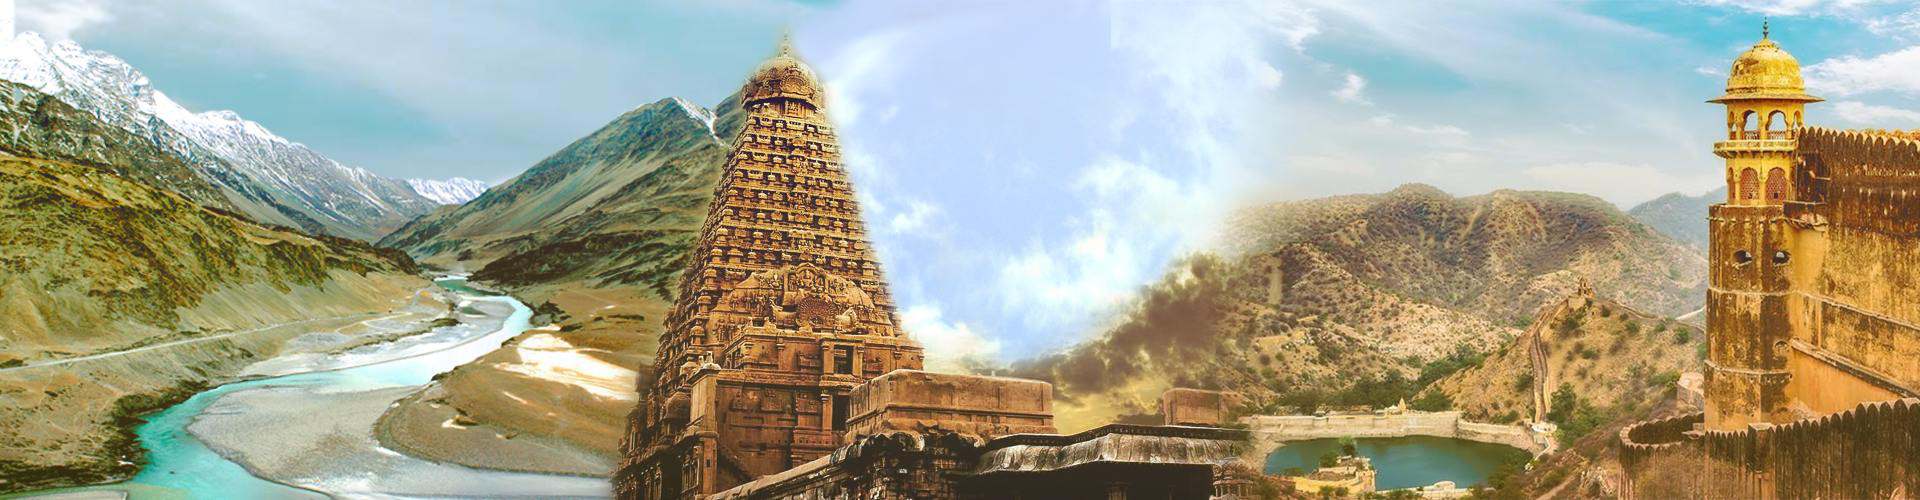 Tirupati Temple Darshan Tour